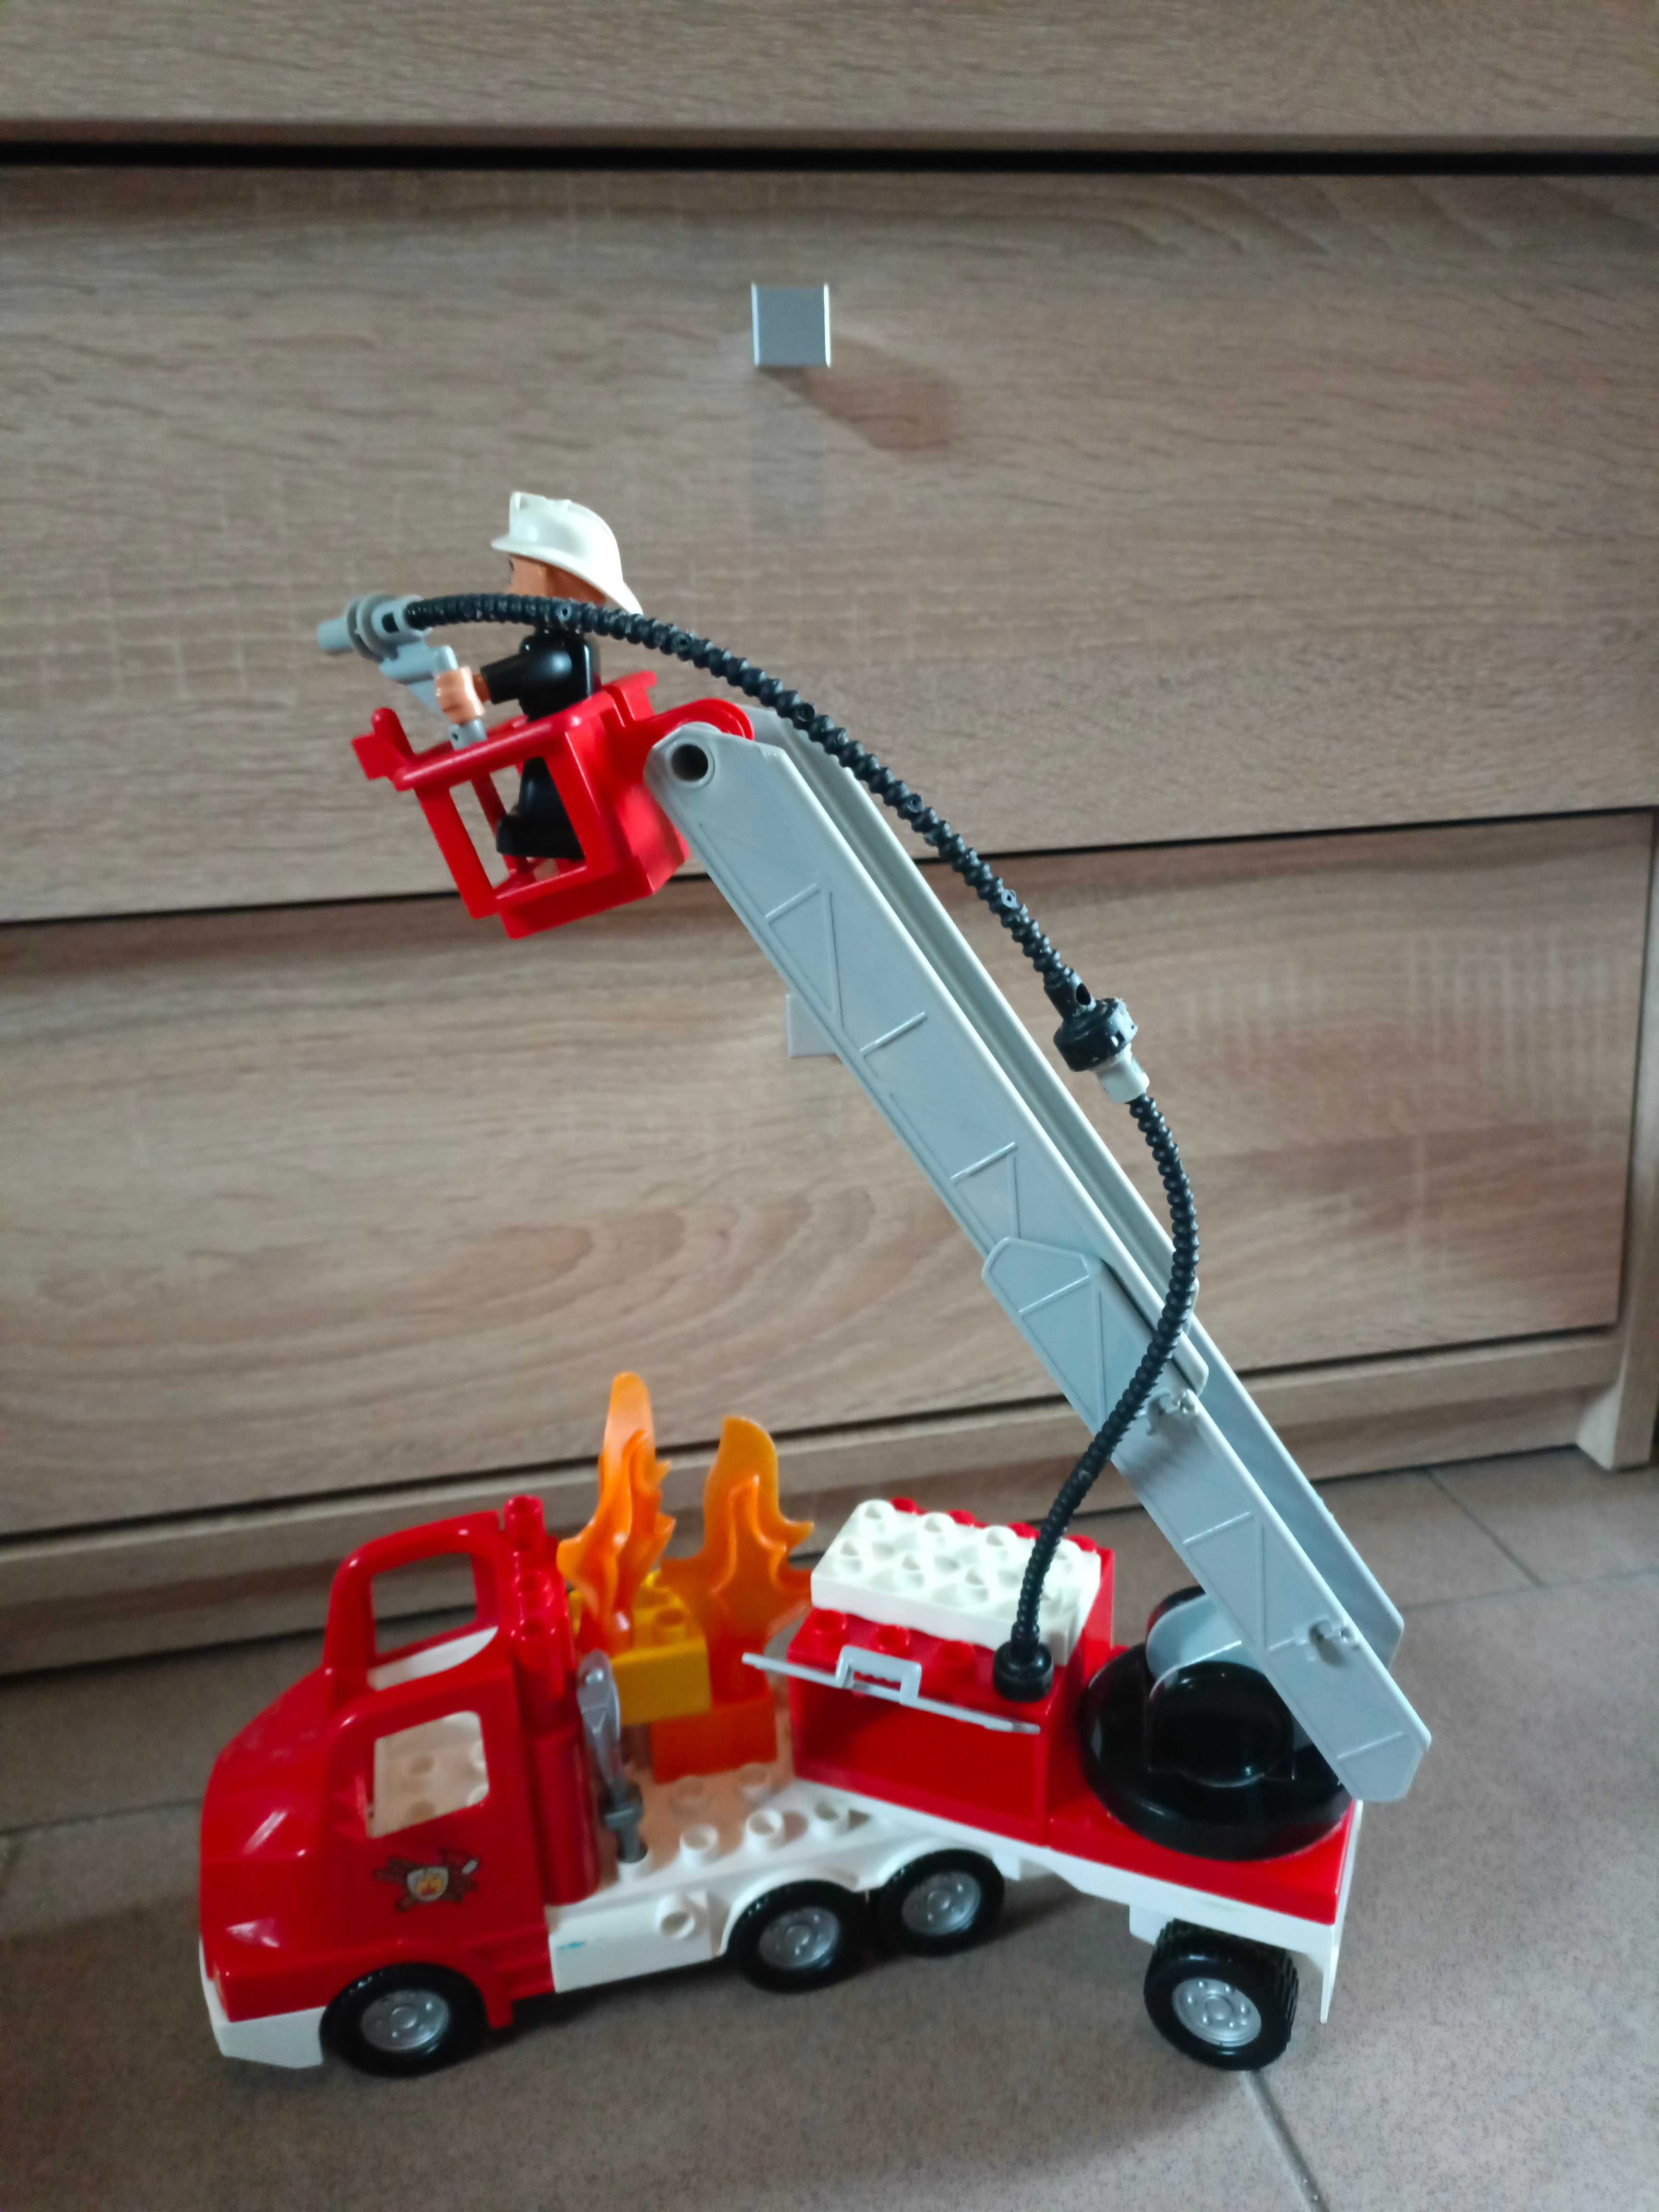 LEGO Duplo wóz strażacki